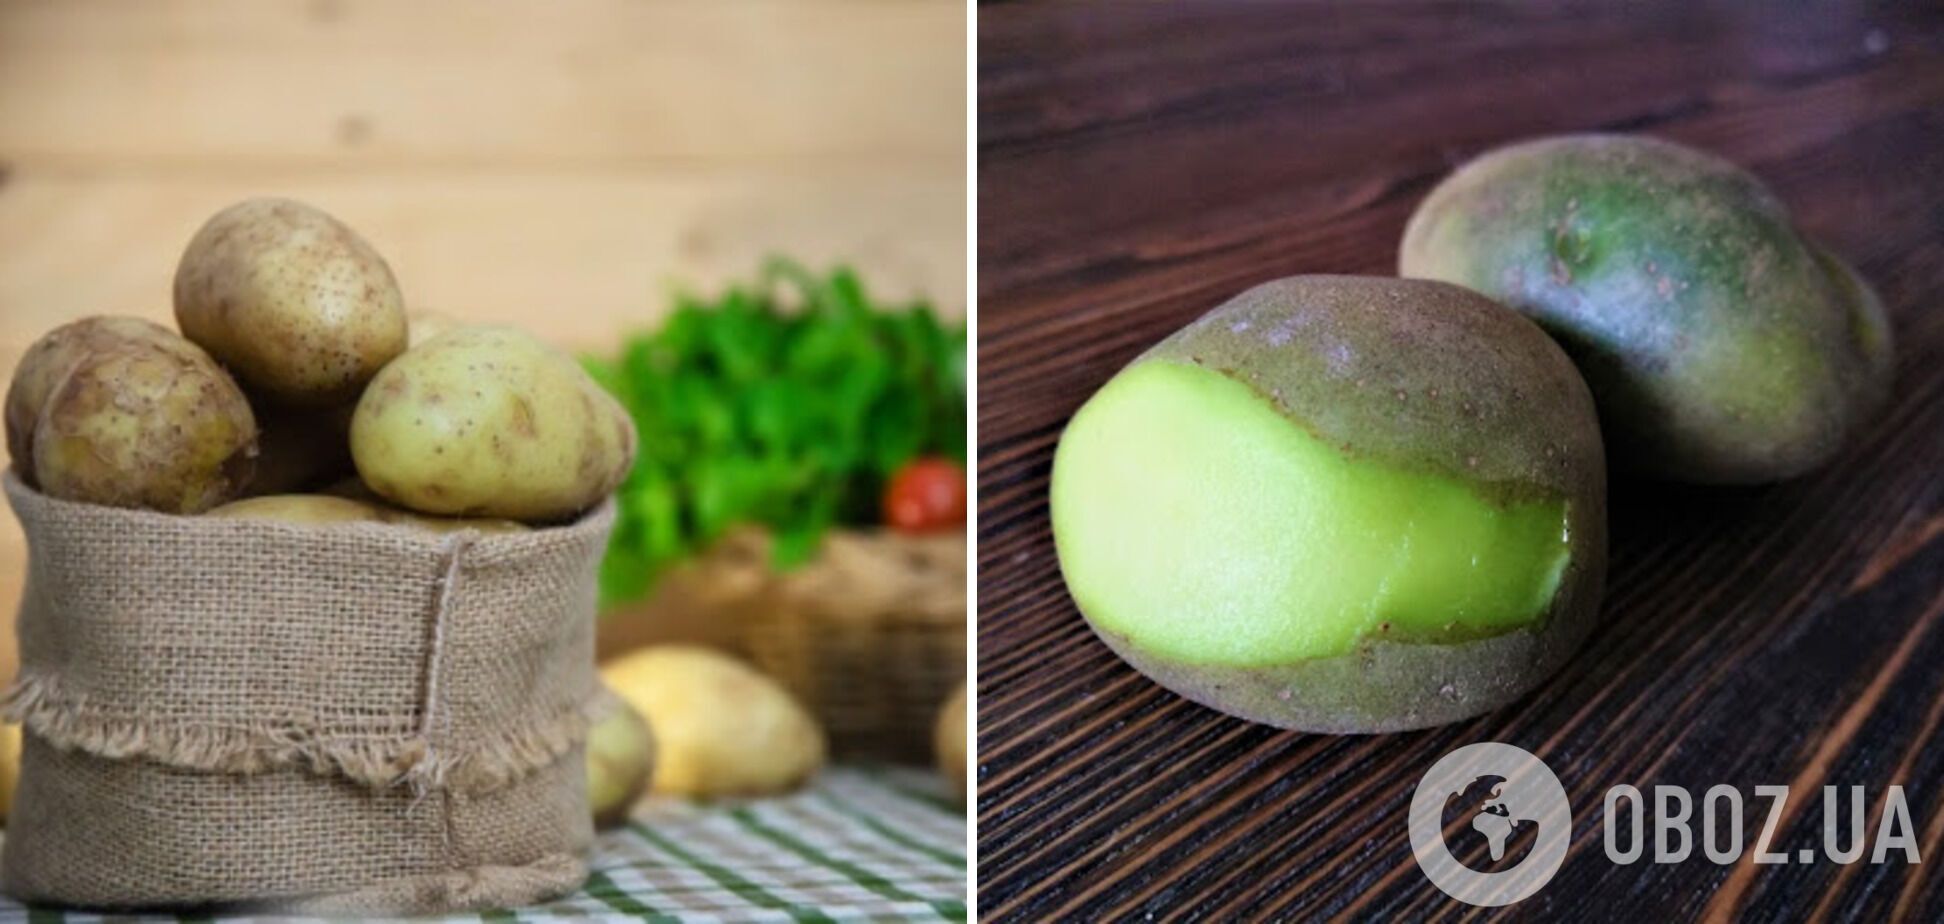 Якщо місце для зберігання картоплі буде недостатньо темним і холодним – картопля може стати зеленою